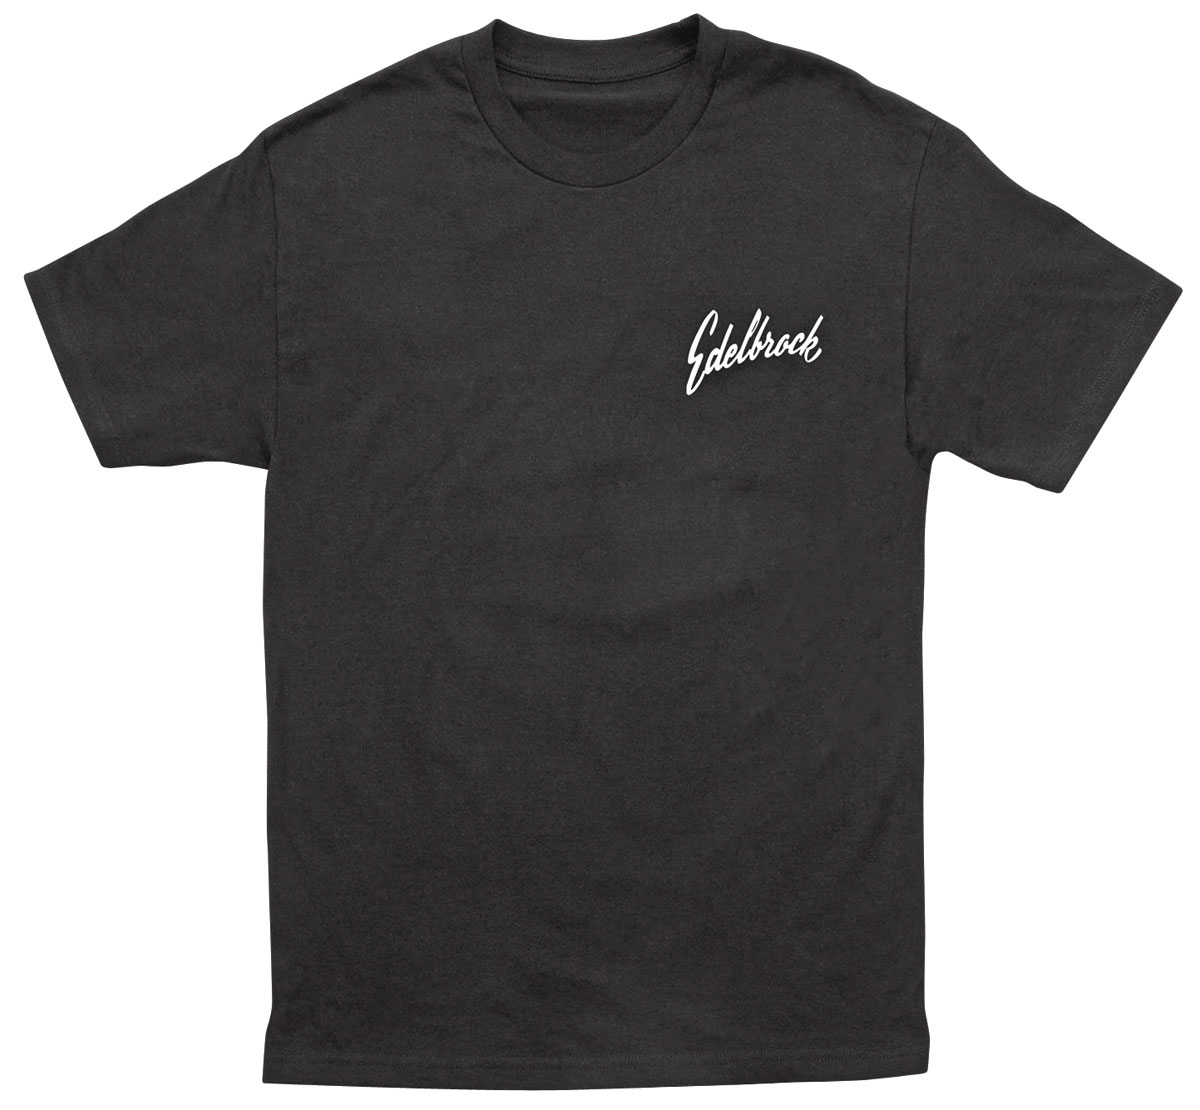 Edelbrock VIC'S Service T-Shirts Fits all Models @ OPGI.com